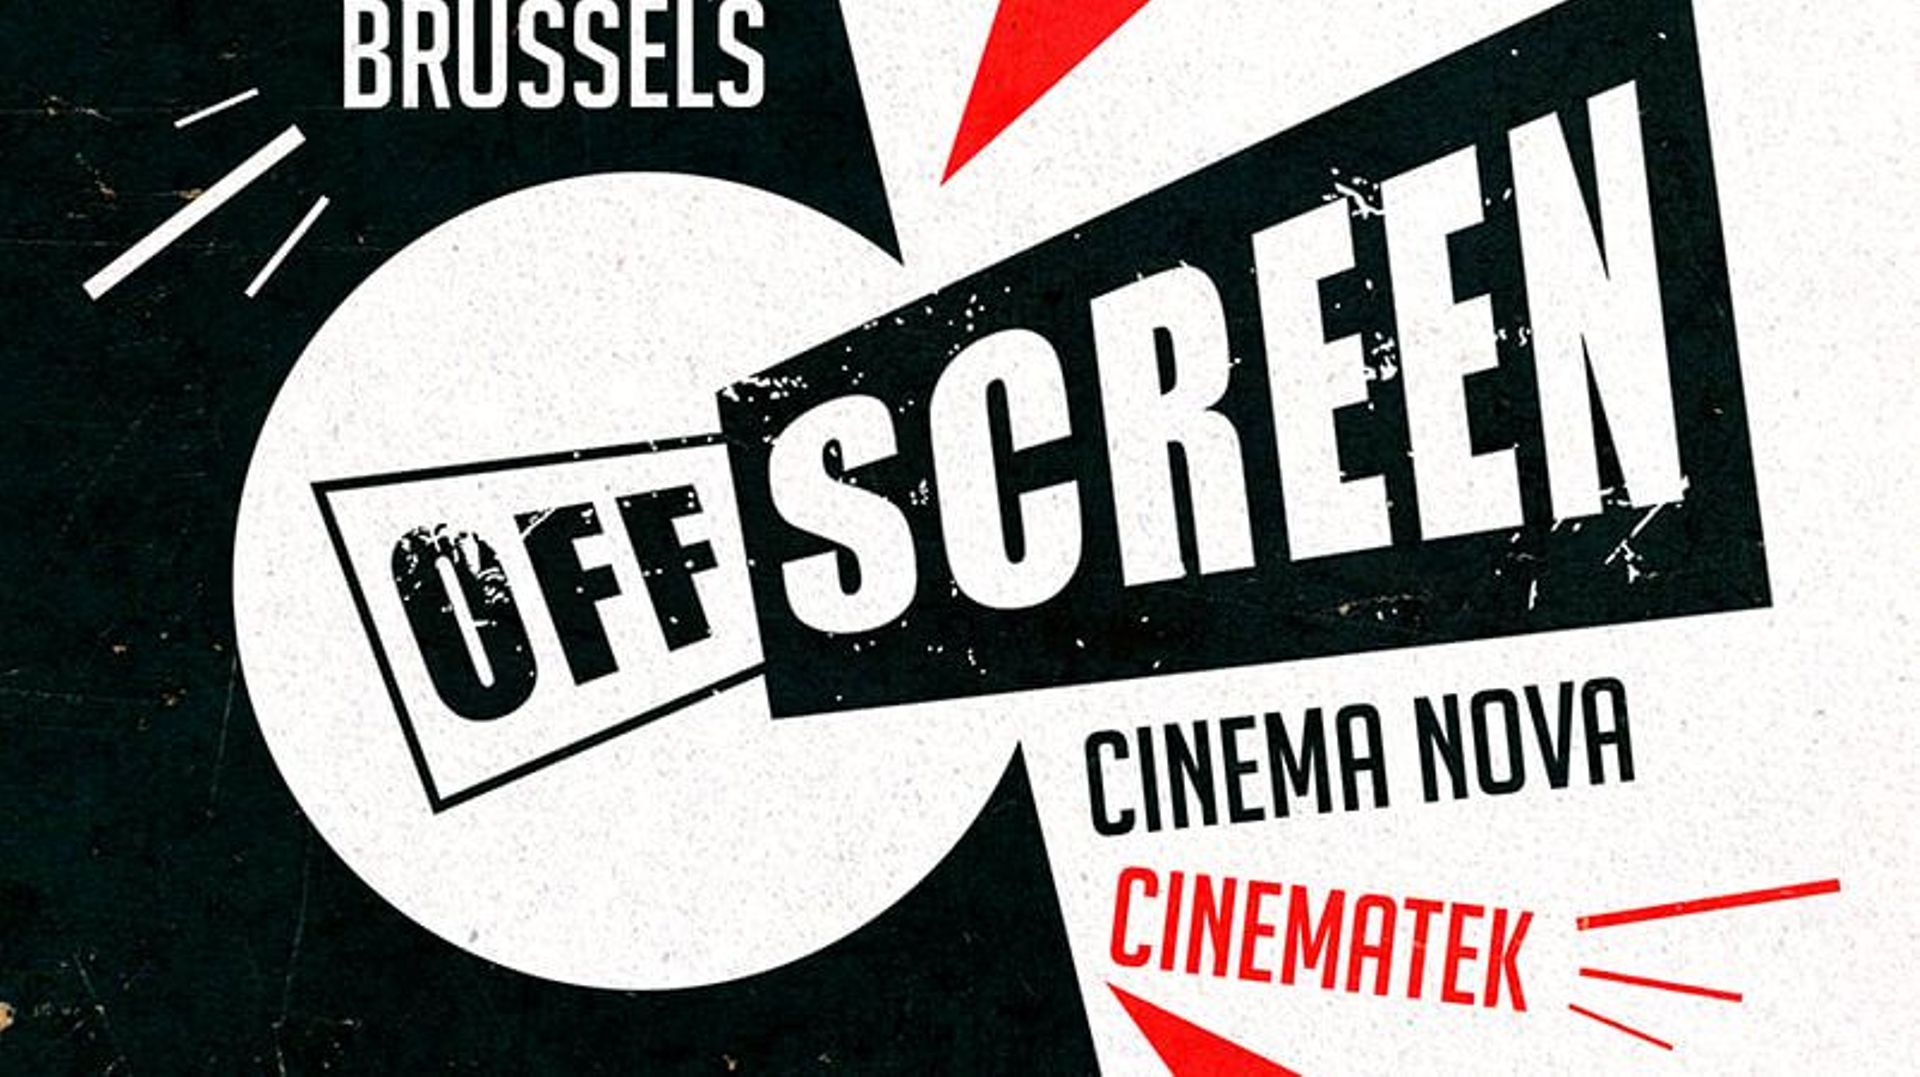 Le festival du film Offscreen est le rendez-vous incontournable des cinéphiles ayant un goût prononcé pour le non conventionnel.
Cet événement annuel, non compétitif, est une vitrine pour les films indépendants et inédits, les classiques cultes et les gen